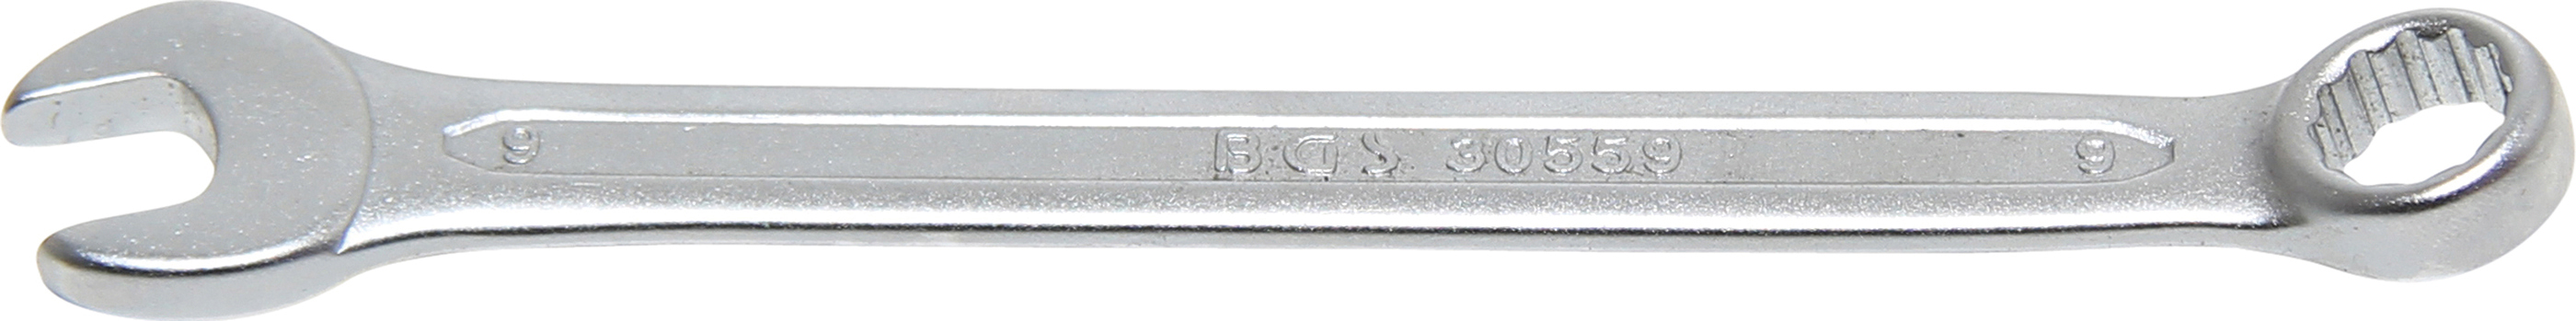 BGS 30559 Cheie combinata, 9 mm